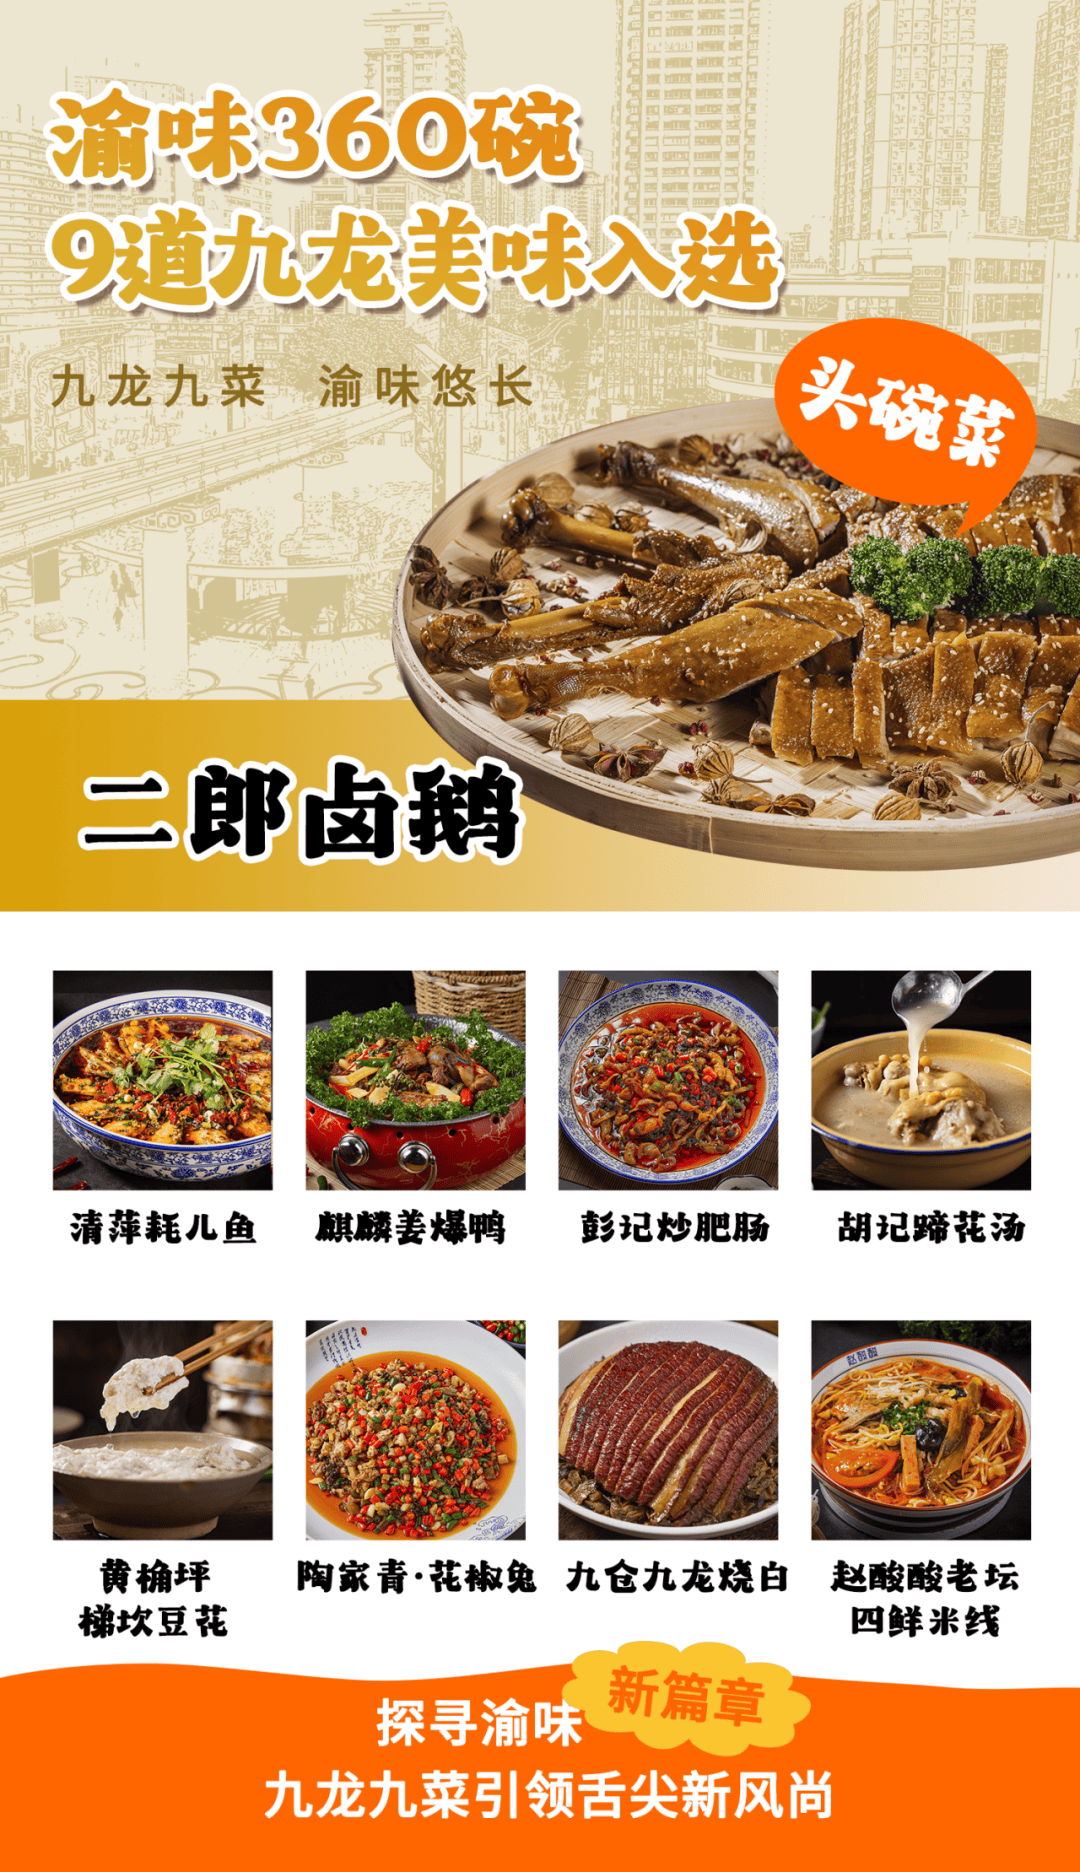 重庆旅游美食“渝味3ayx爱游戏60碗”发布会举行 九龙坡区9道美食上榜(图3)